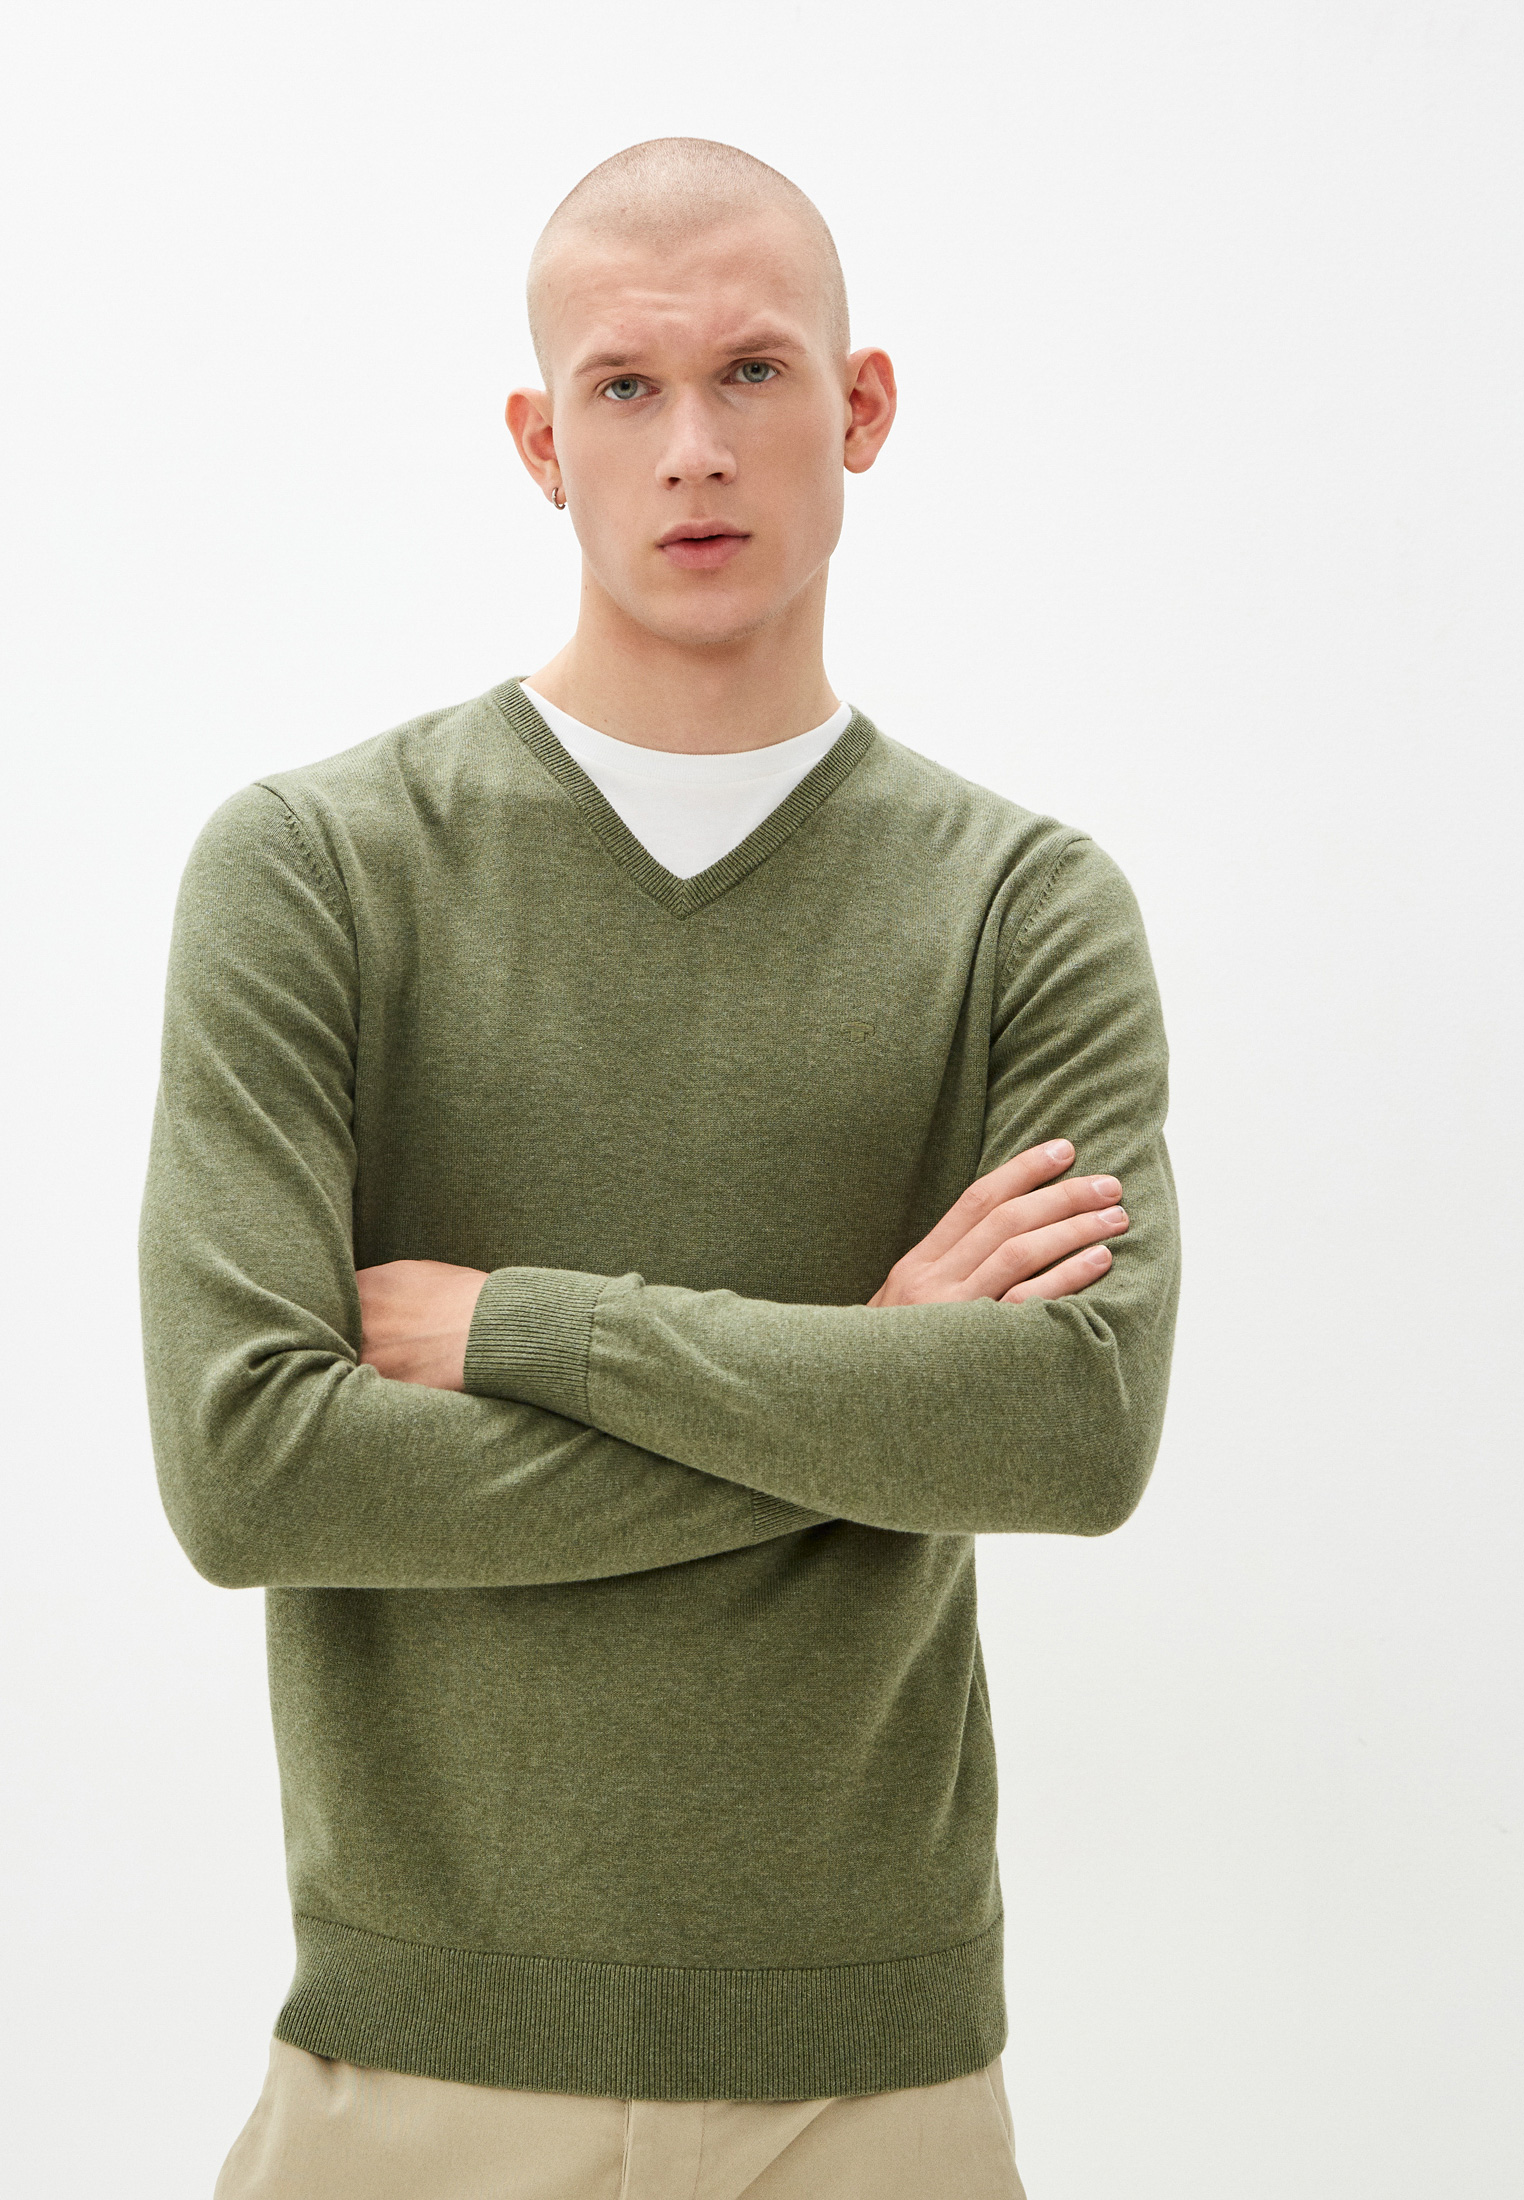 Пуловер мужской Tom Tailor (Том Тейлор) 1027300 цвет хаки купить за 2210  руб.